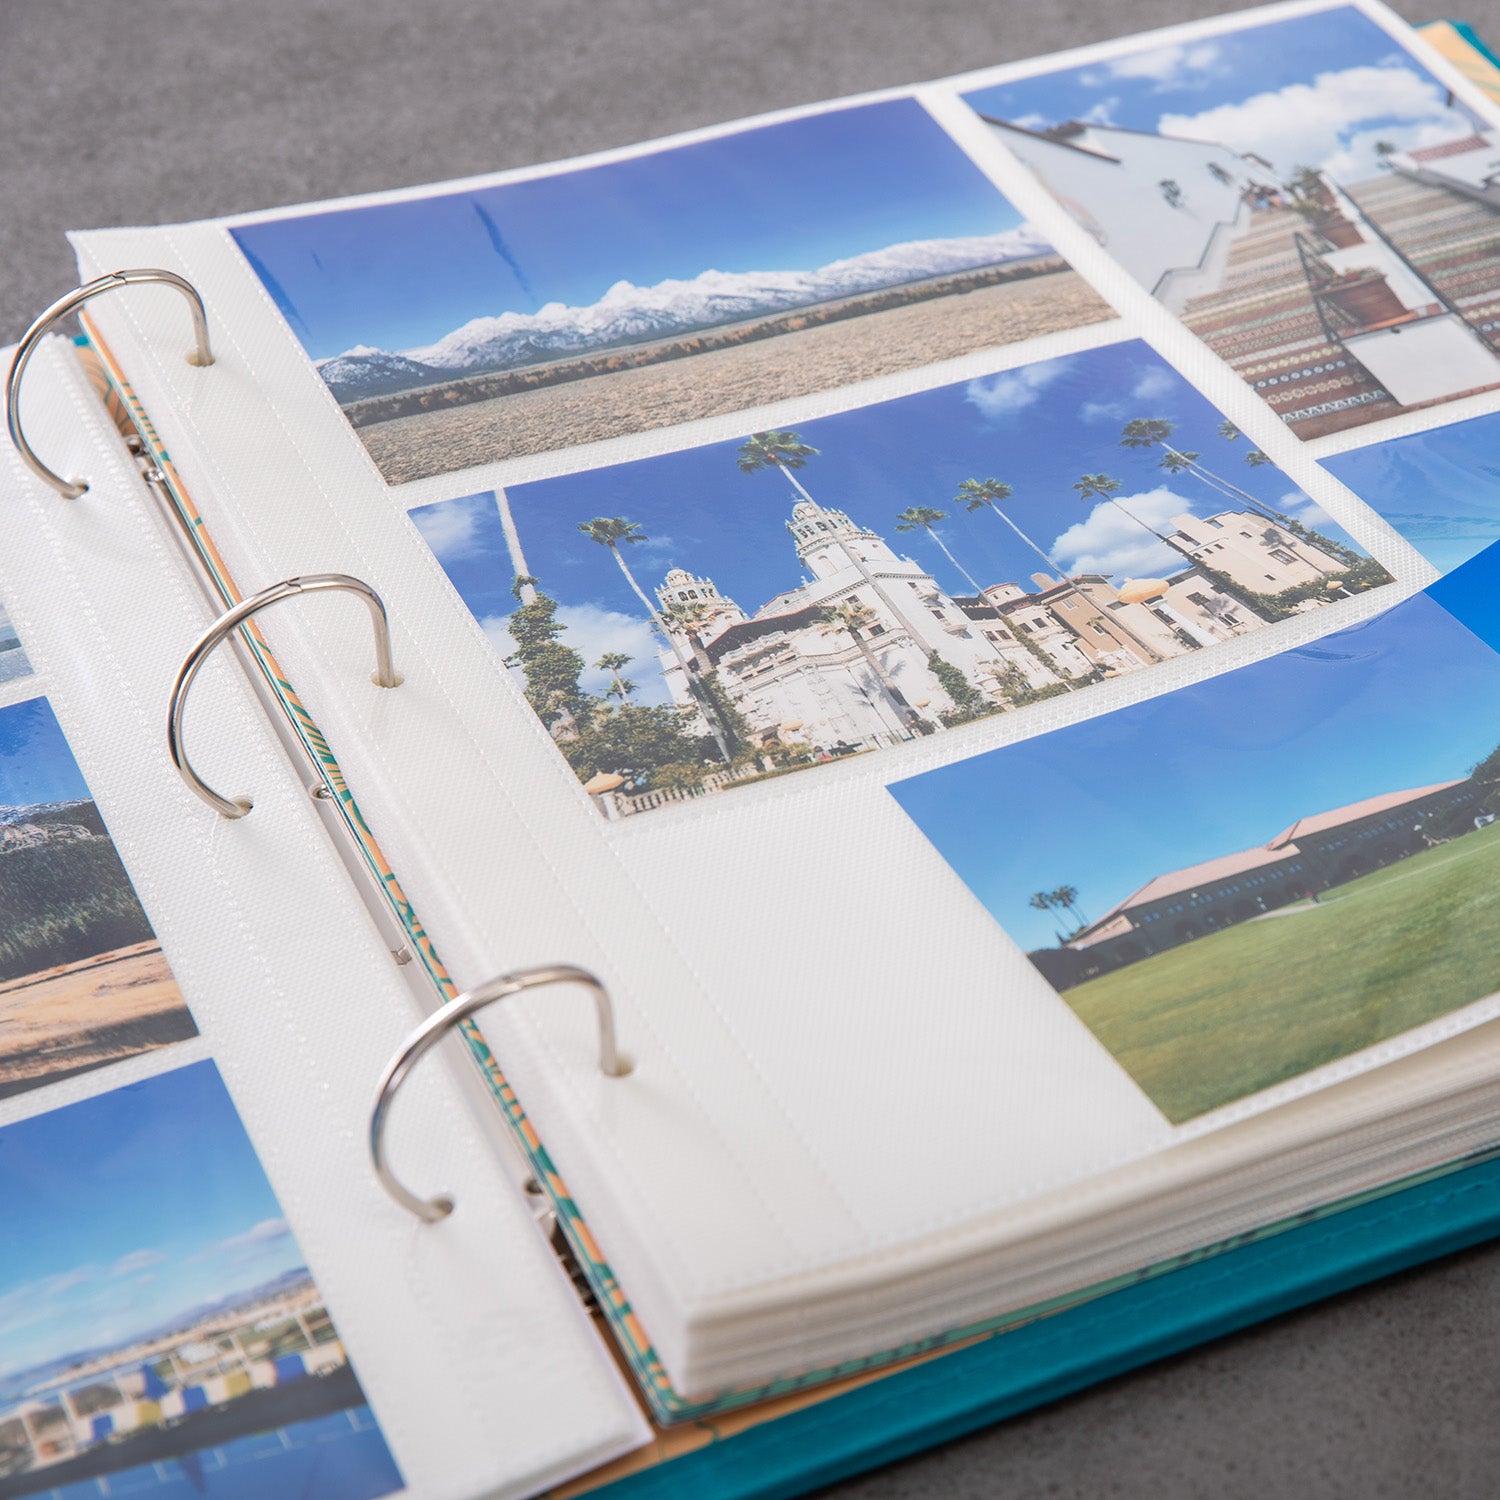 COFICE Photo Album 4x6 - Large Picture Album Book with 3 Ring Binder